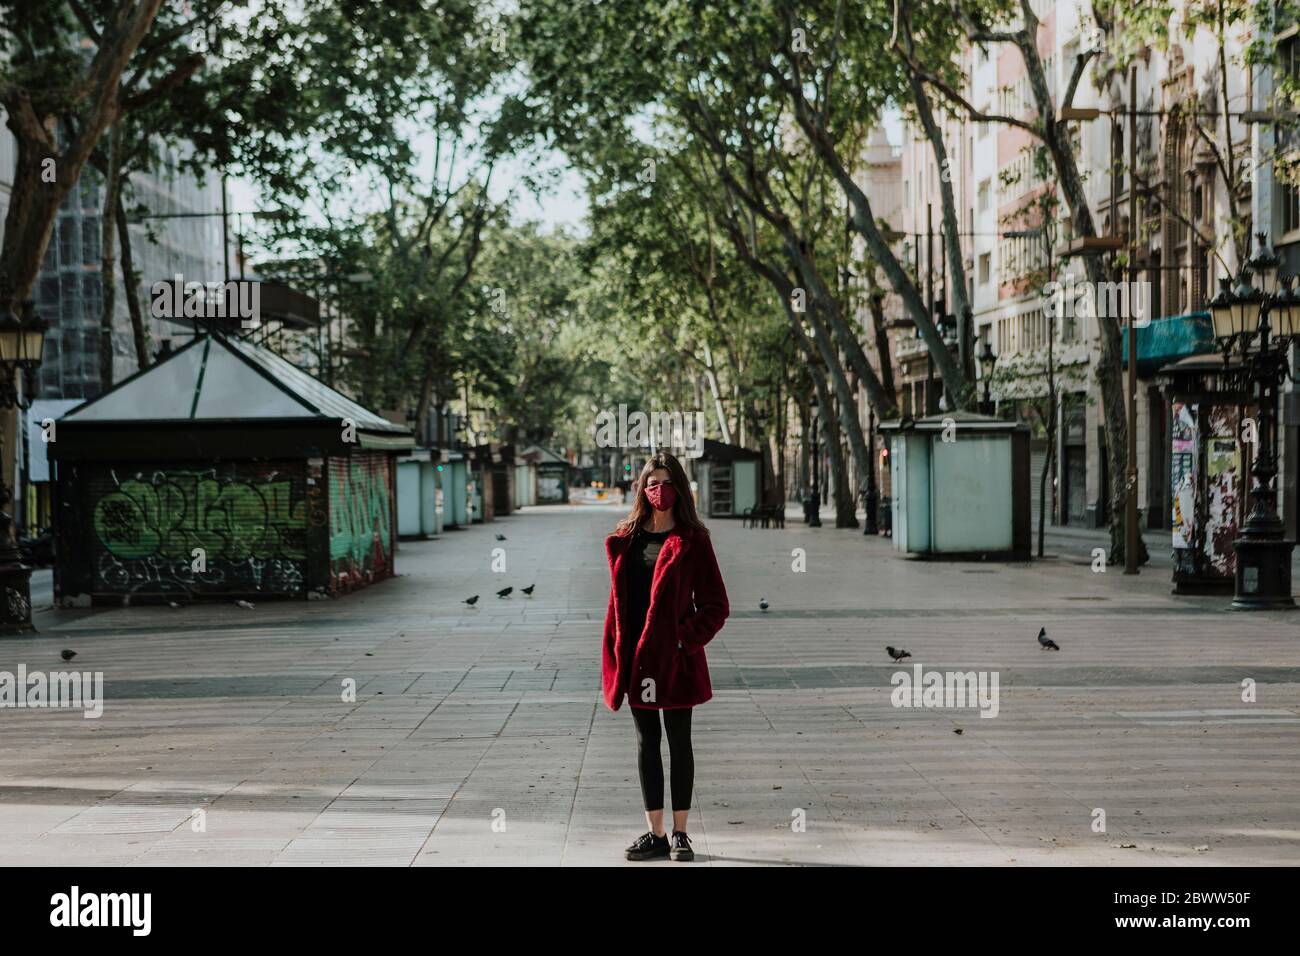 Portrait en longueur de la femme debout sur un sentier vide de la ville, Barcelone, Espagne Banque D'Images